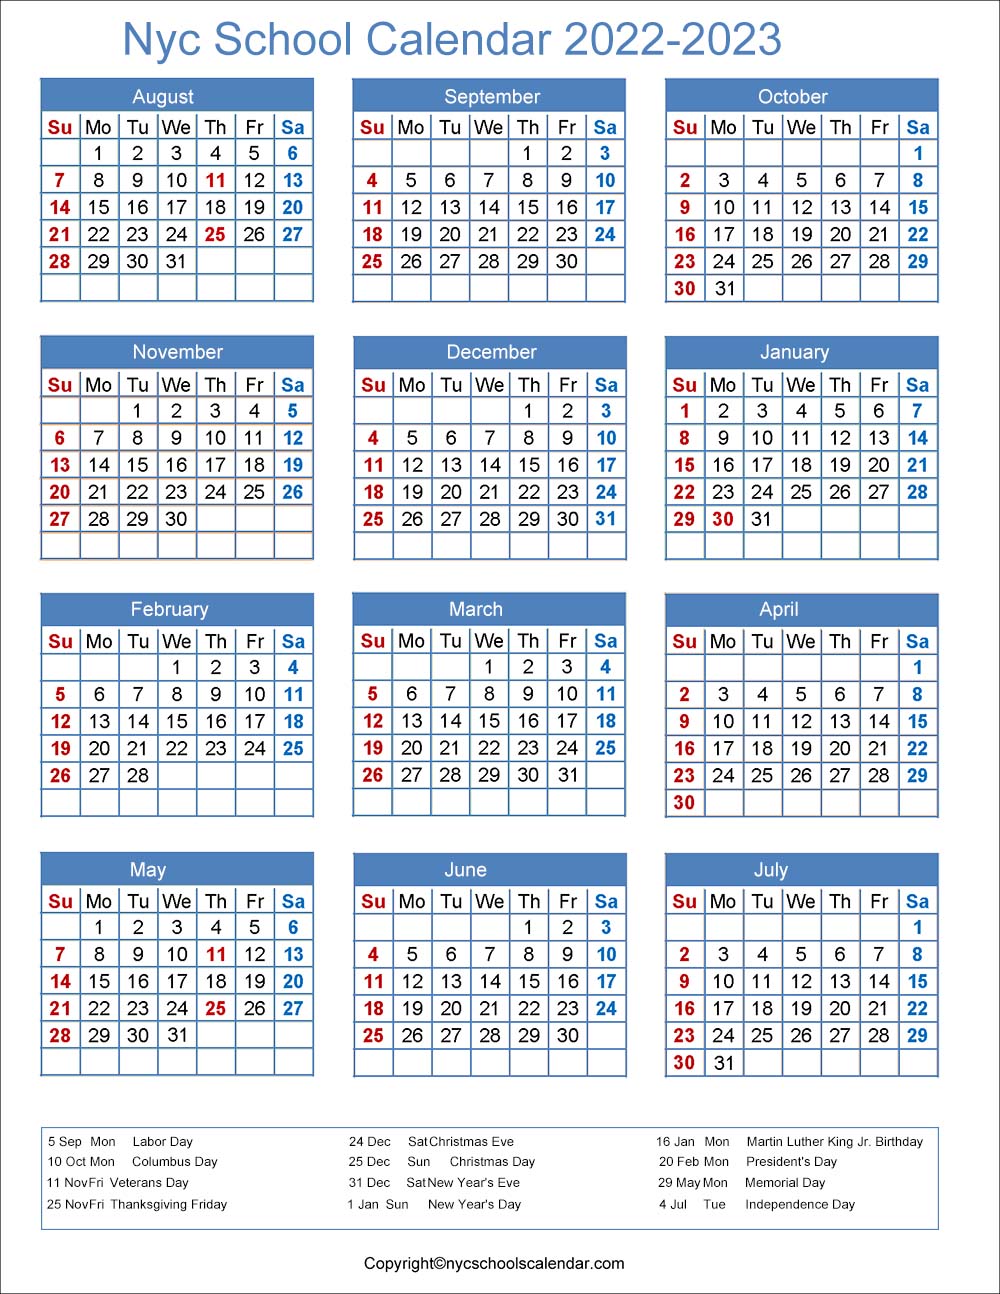 Plattsburgh Academic Calendar Spring 2022 ❤️Nyc School Holidays Calendar 2022-2023 ✓